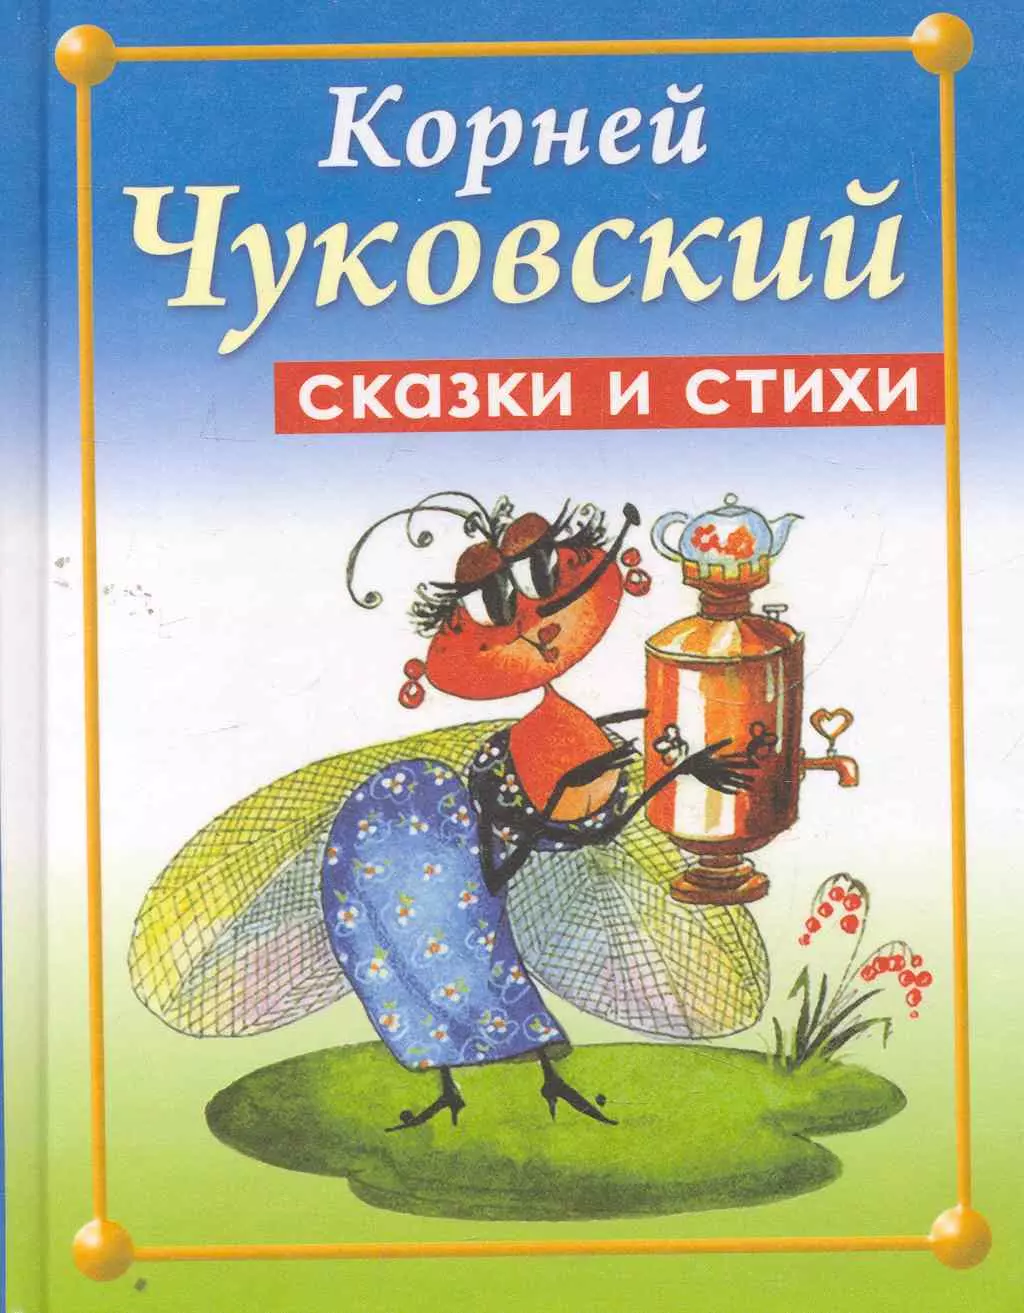 Книжки Корнея Чуковского